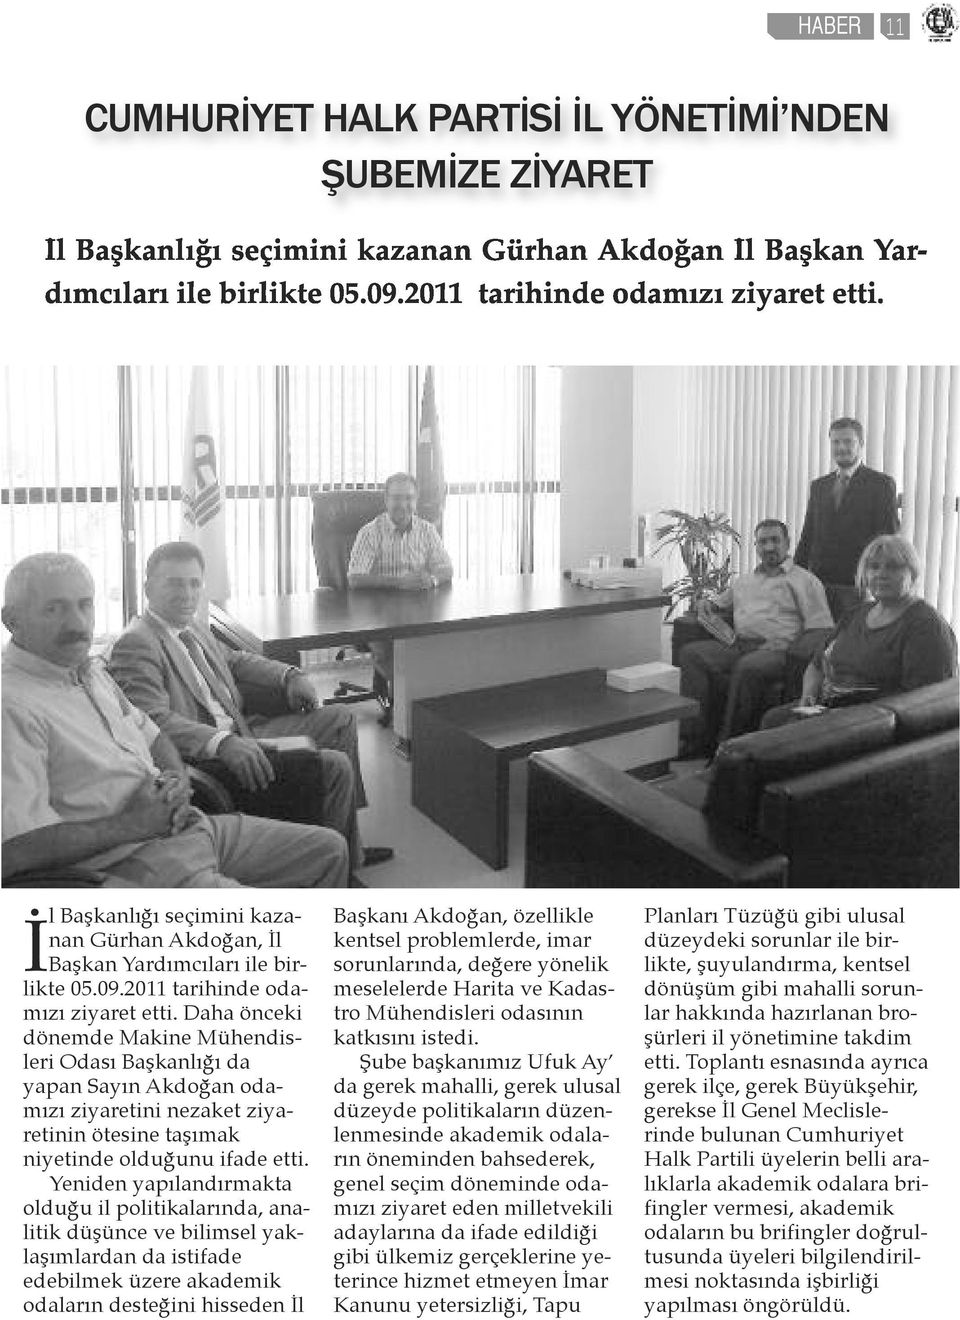 Daha önceki dönemde Makine Mühendisleri Odası Başkanlığı da yapan Sayın Akdoğan odamızı ziyaretini nezaket ziyaretinin ötesine taşımak niyetinde olduğunu ifade etti.